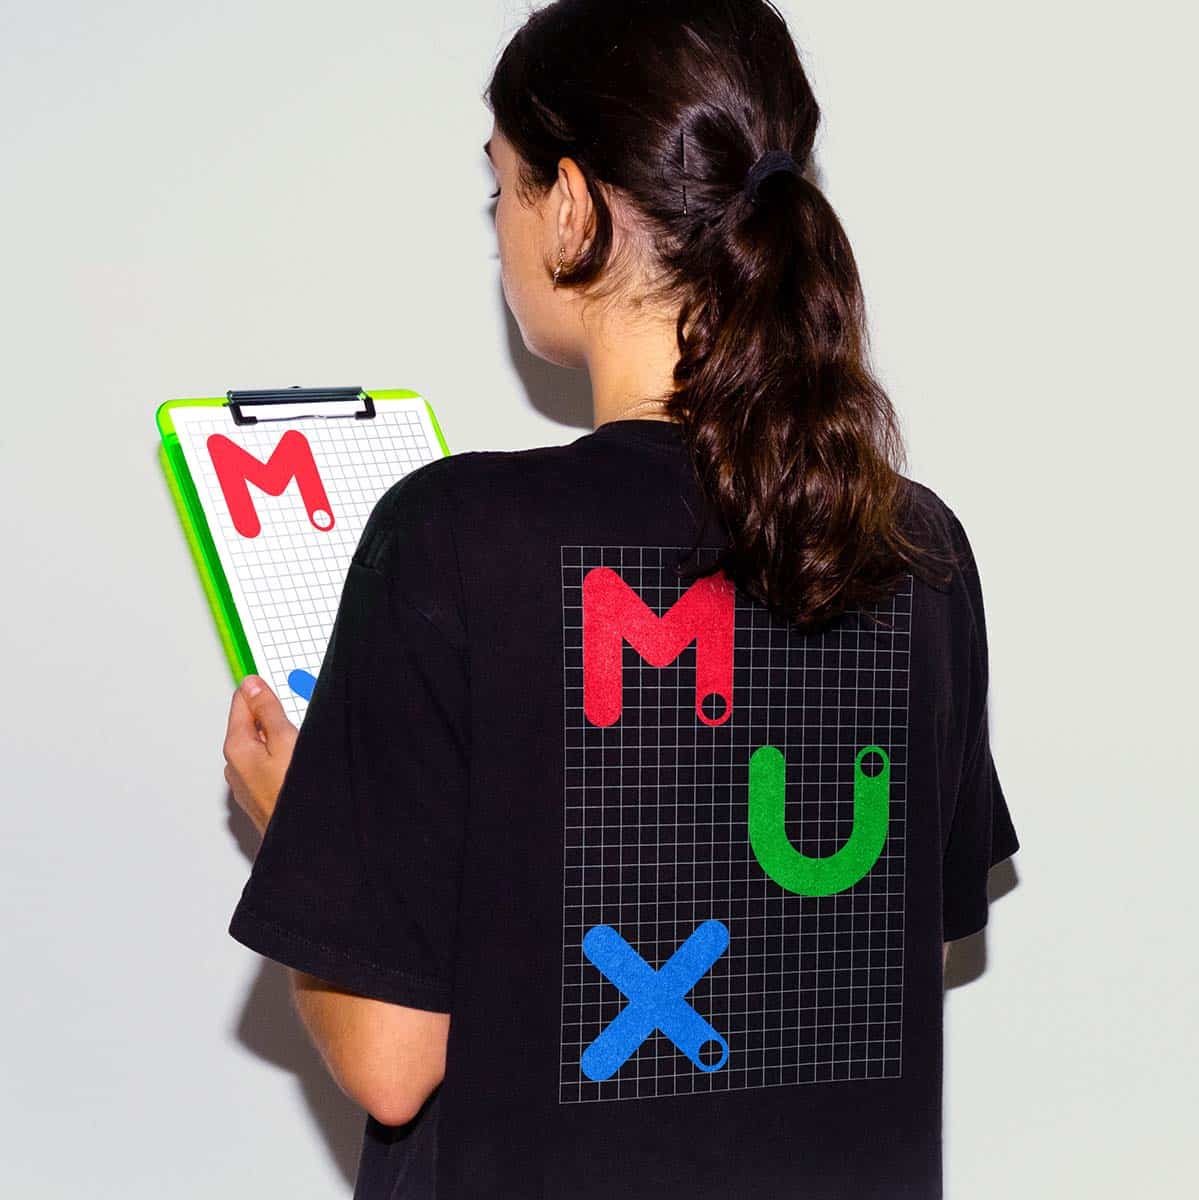 Eine Frau trägt ein shirt mit dem Lux logo auf dem rücken